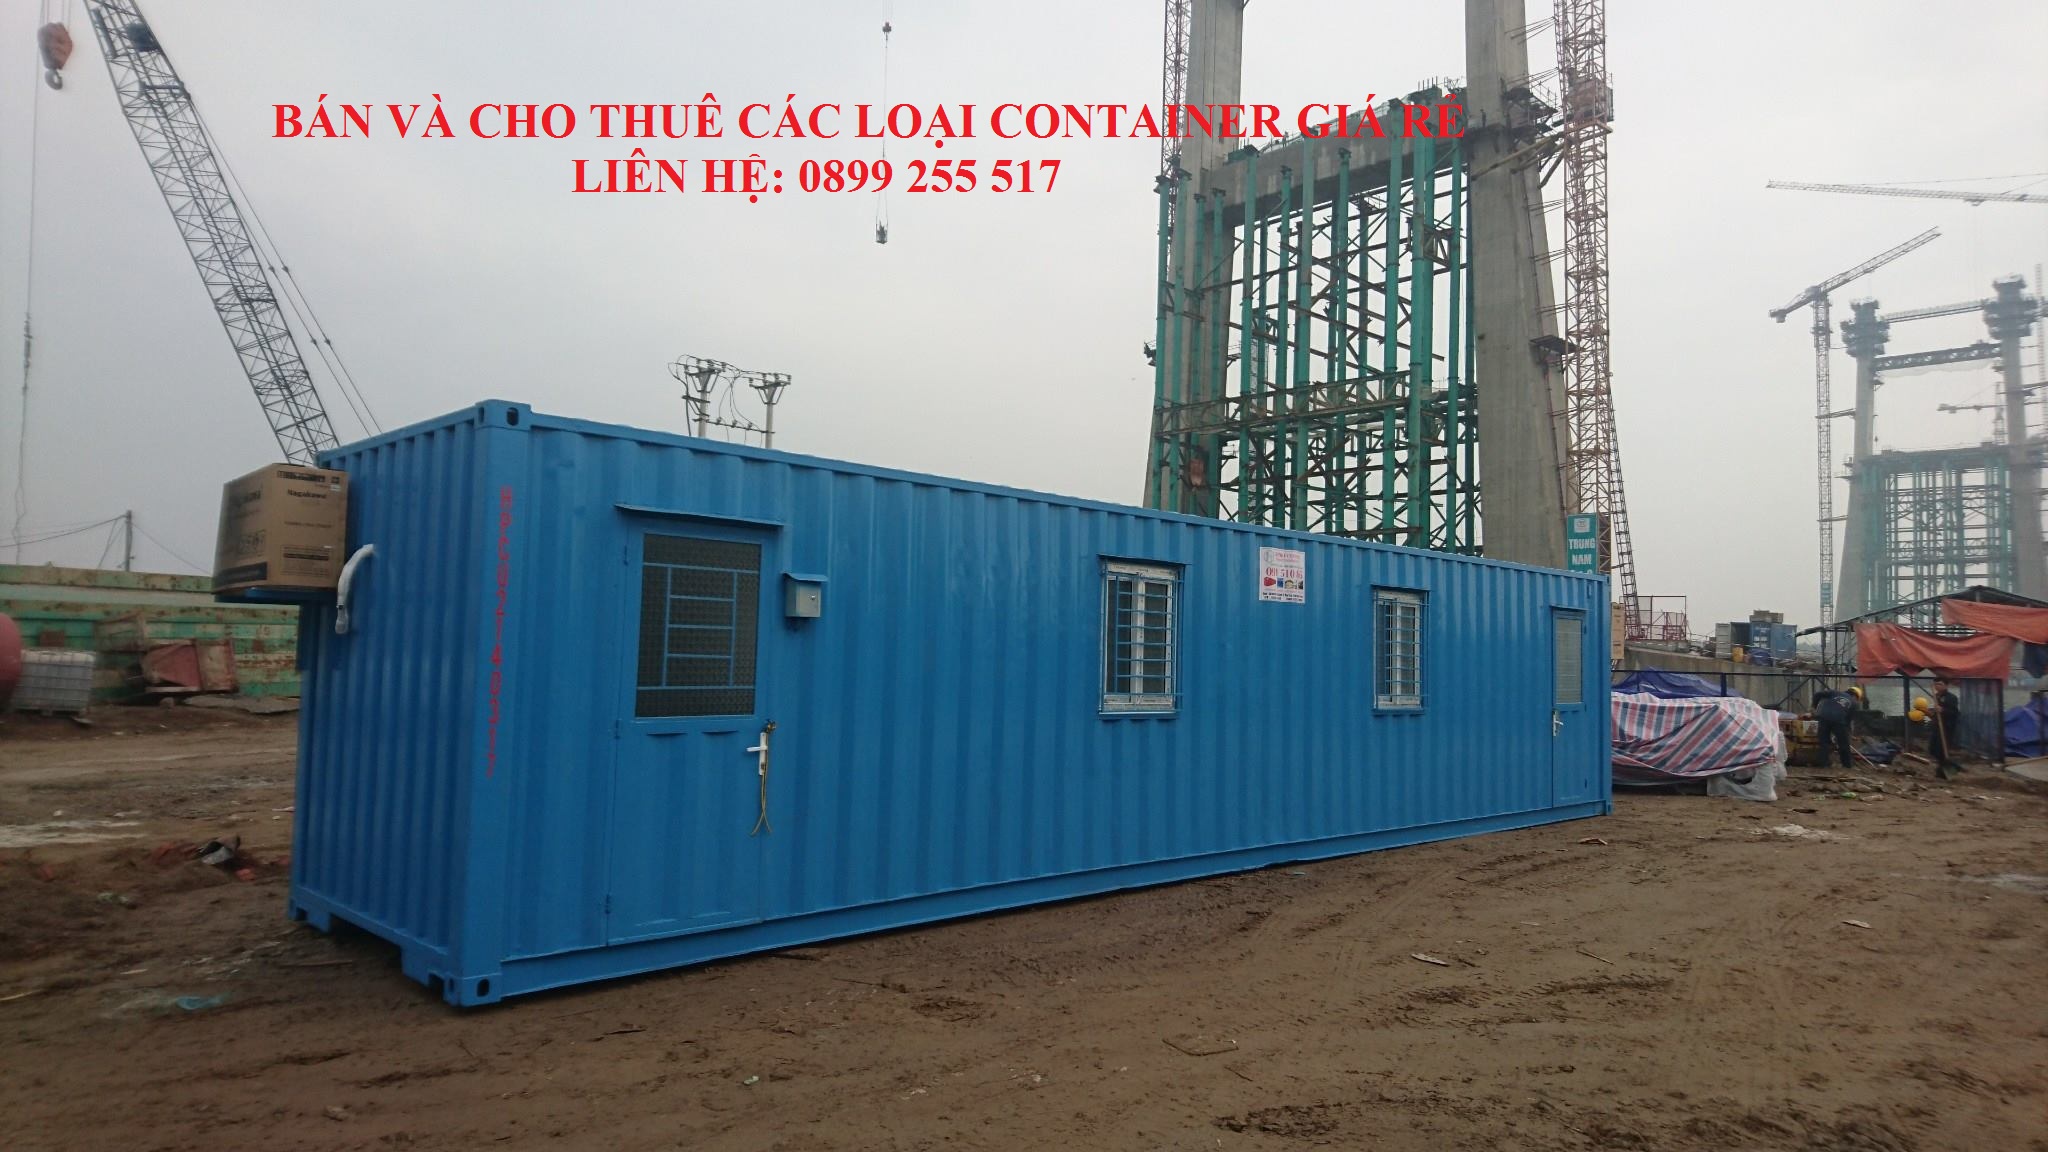 Bàn giao container văn phòng 40 feet tại Quảng Ninh